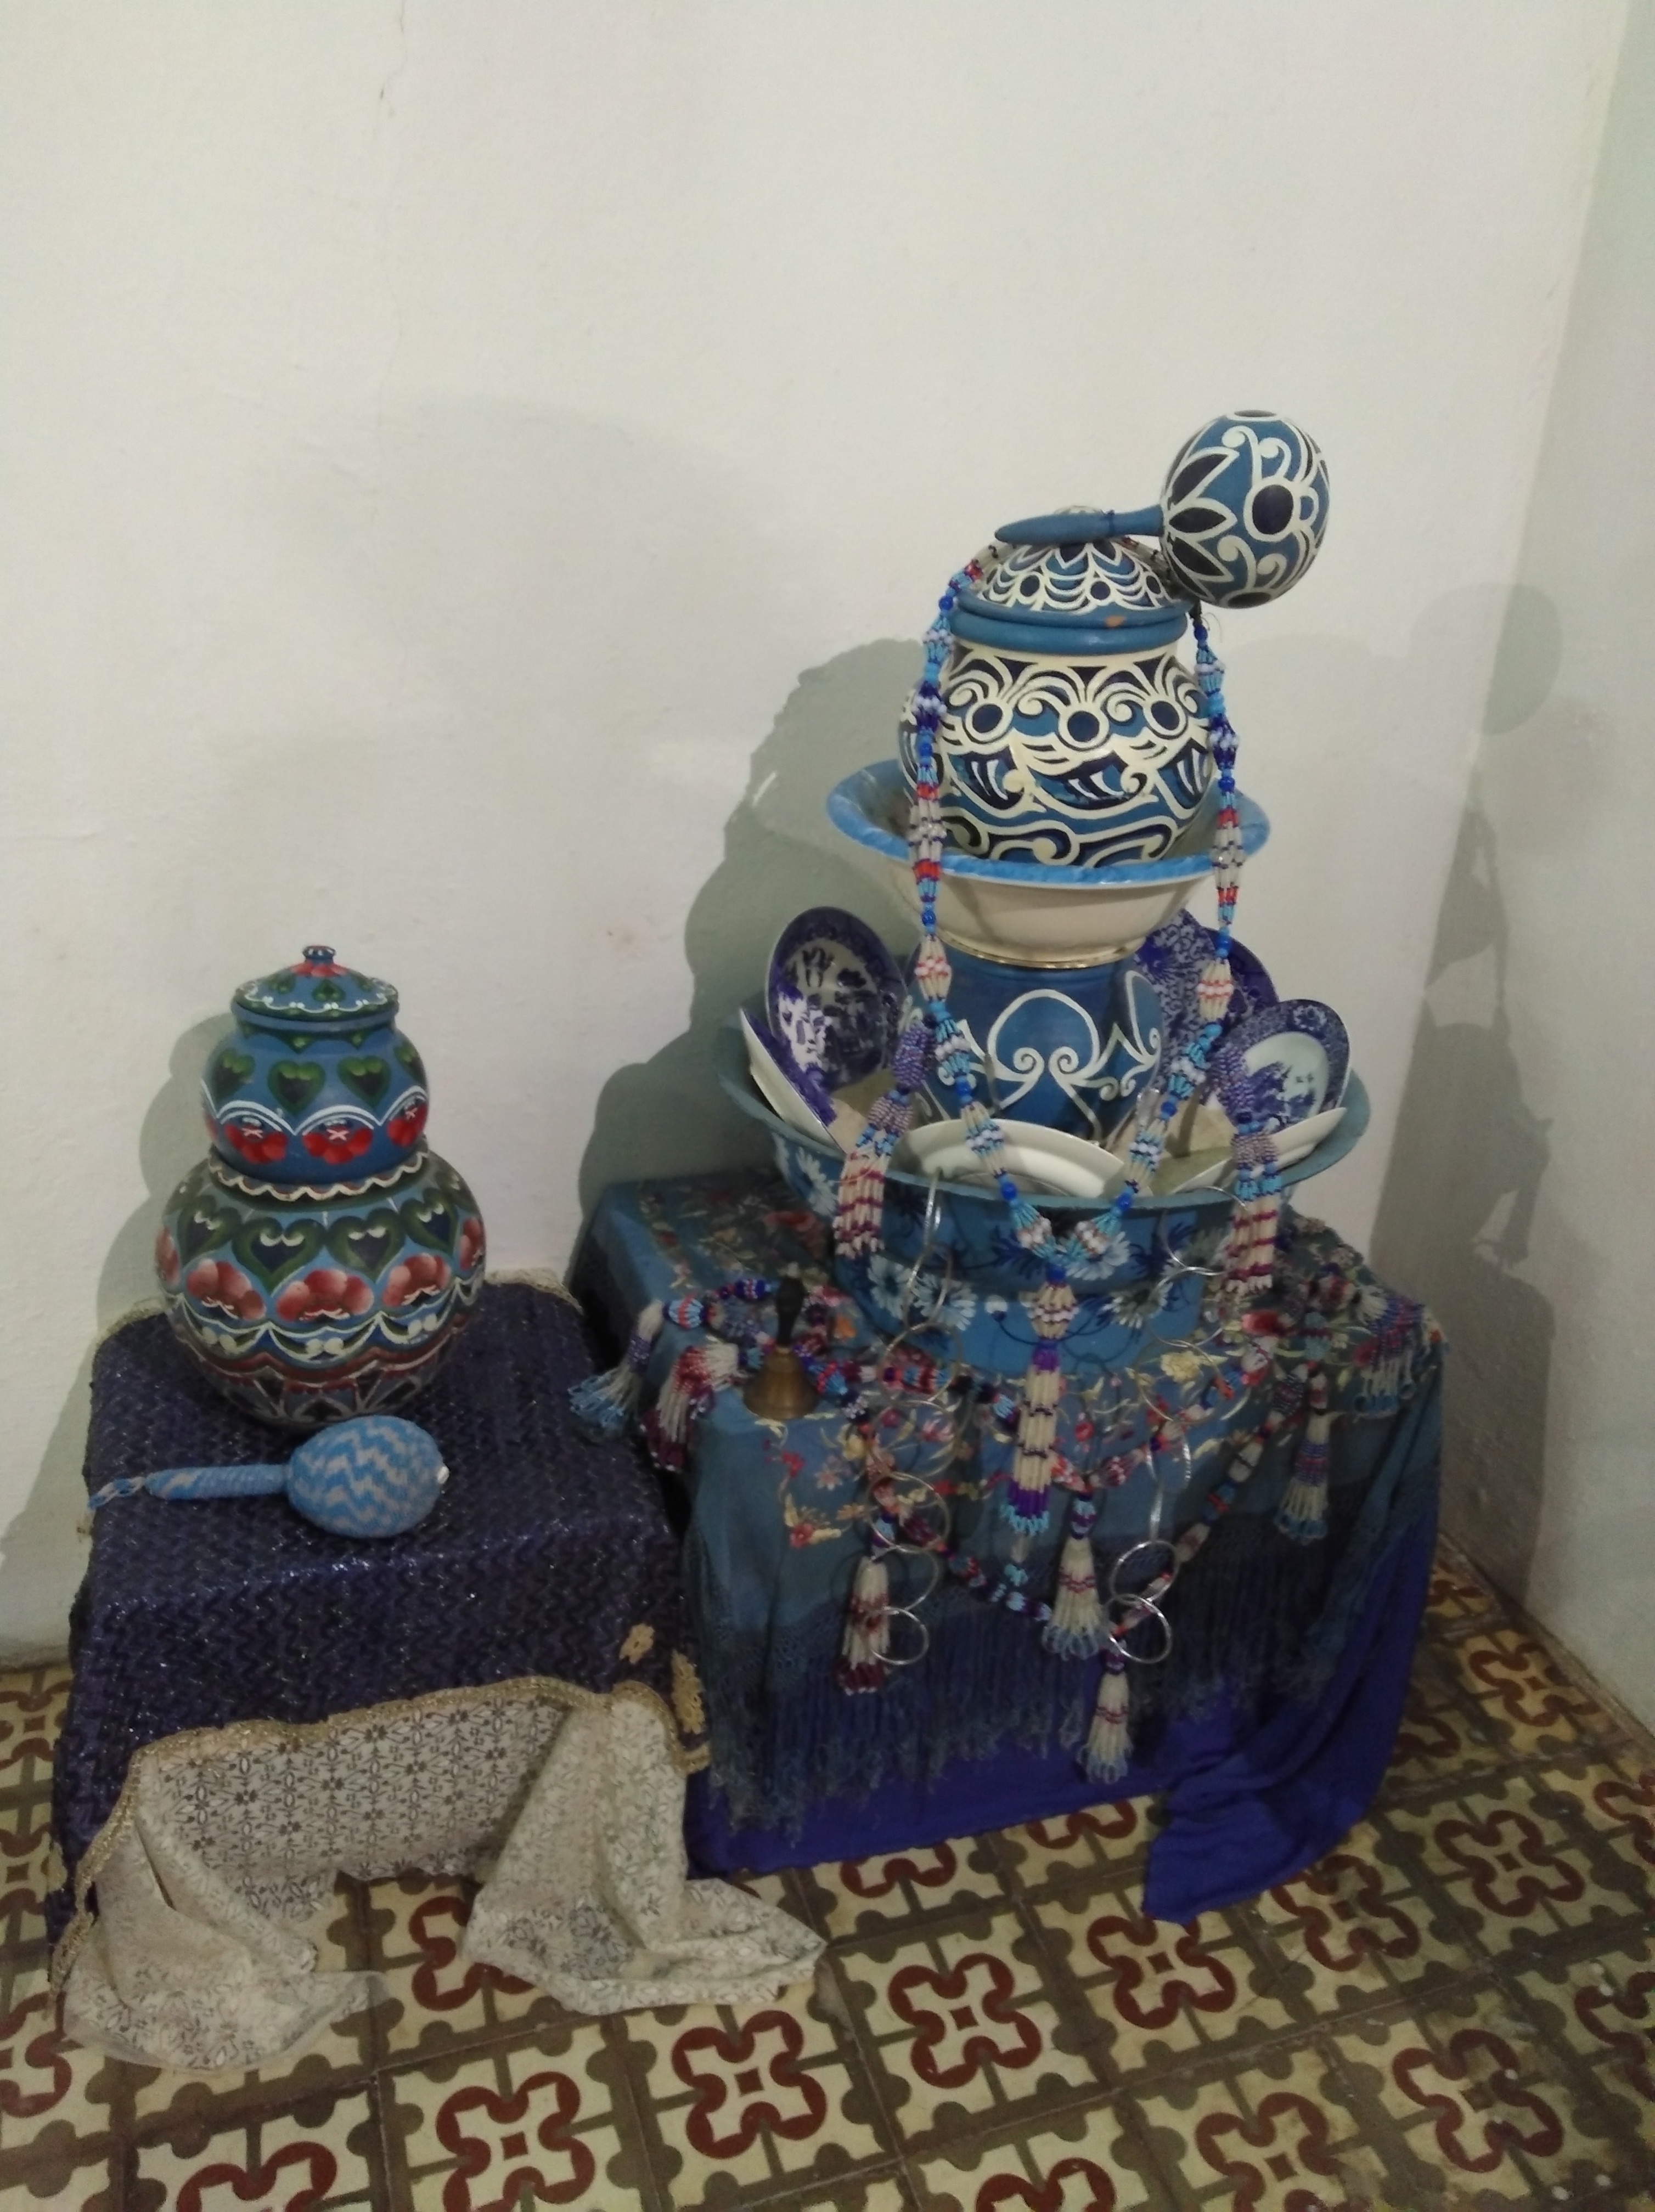 Museo Municipal de Madruga. Colección de artefactos etnológicos de religiones afrocubanas. Foto: Nilson Acosta